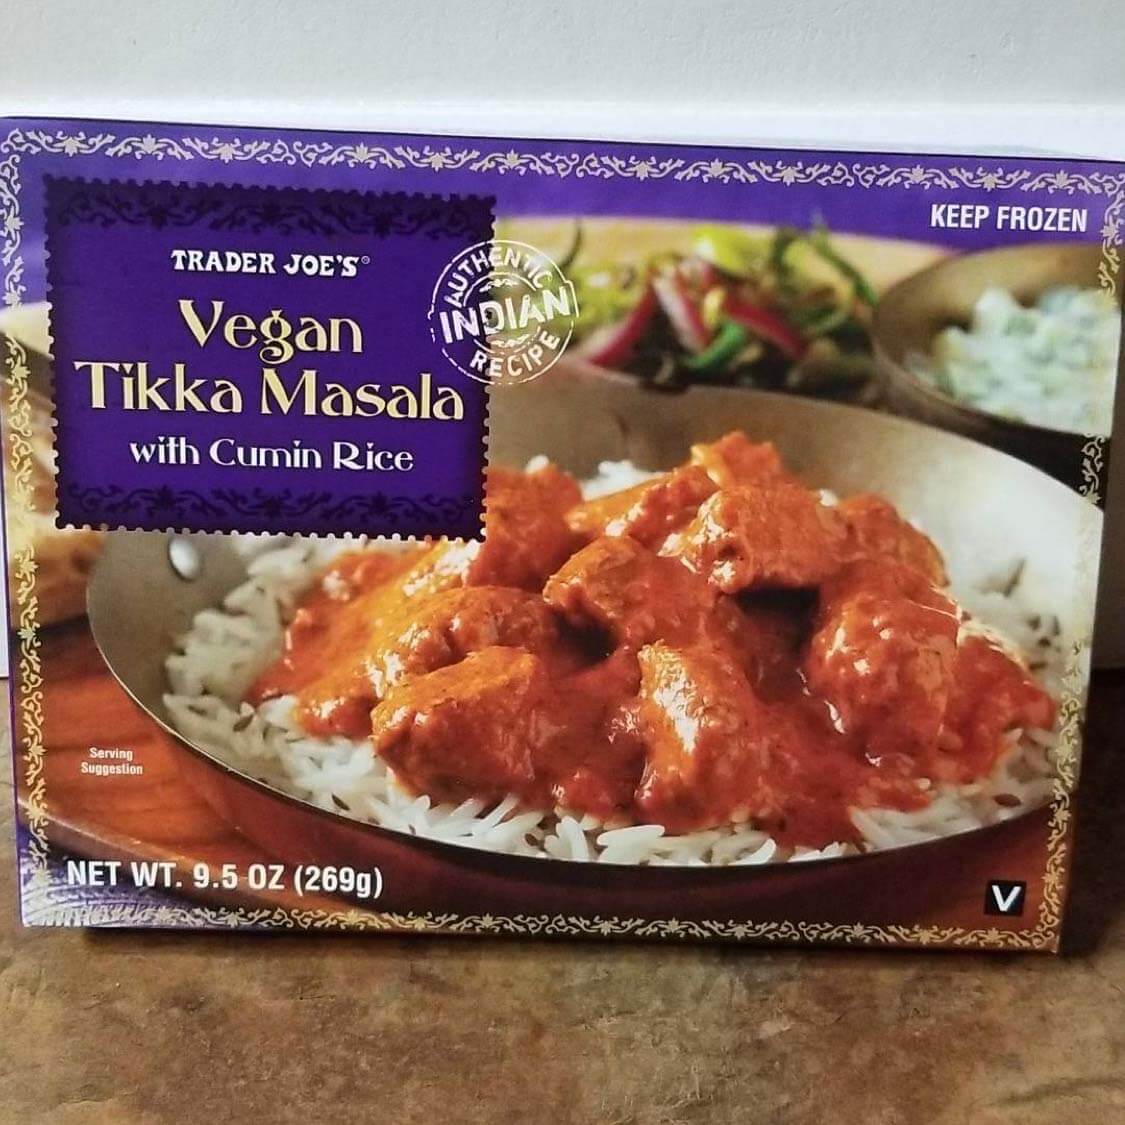 Trader Joe's Vegan Tikka Masala